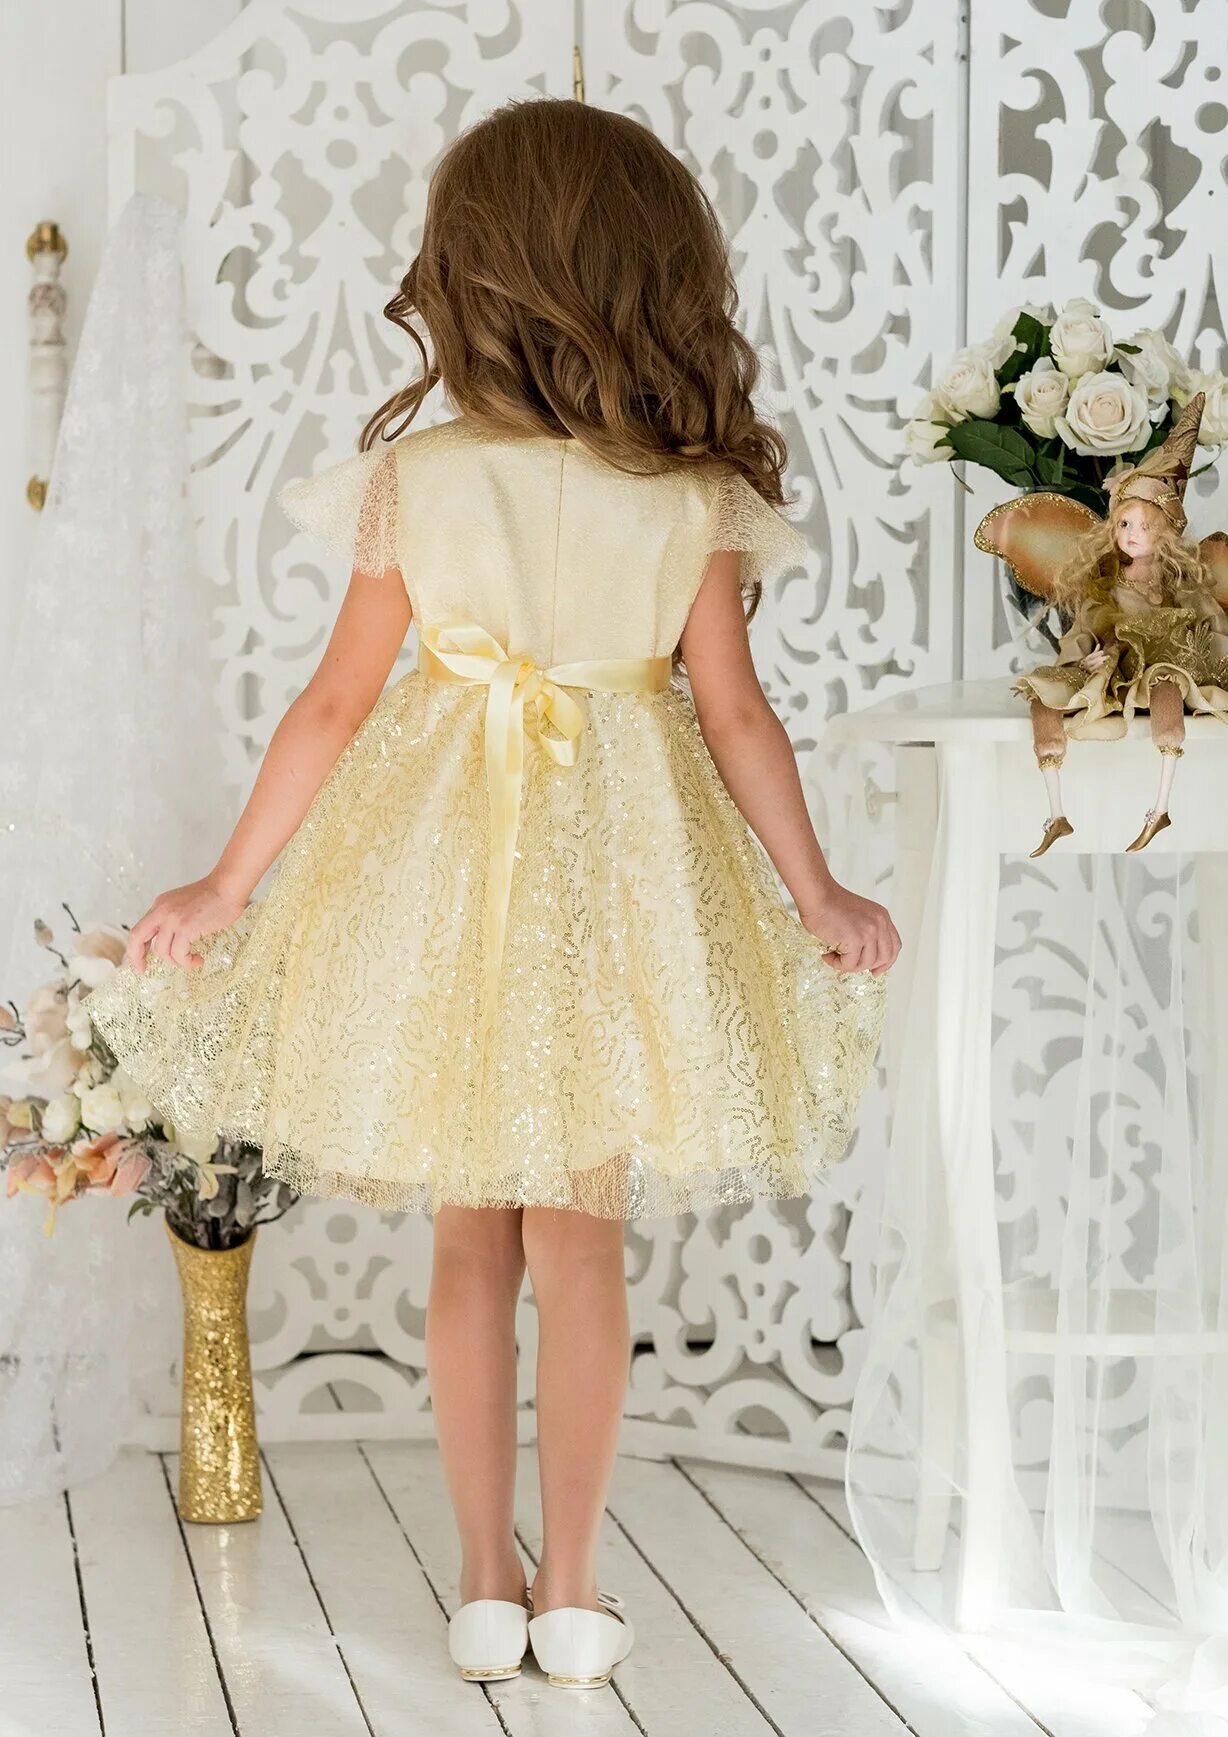 Дети gold. Платье АЛОЛИКА. ALOLIKA платье праздничное Кэнди. Платье золотые пайетки АЛОЛИКА. Золотое платье для девочки.